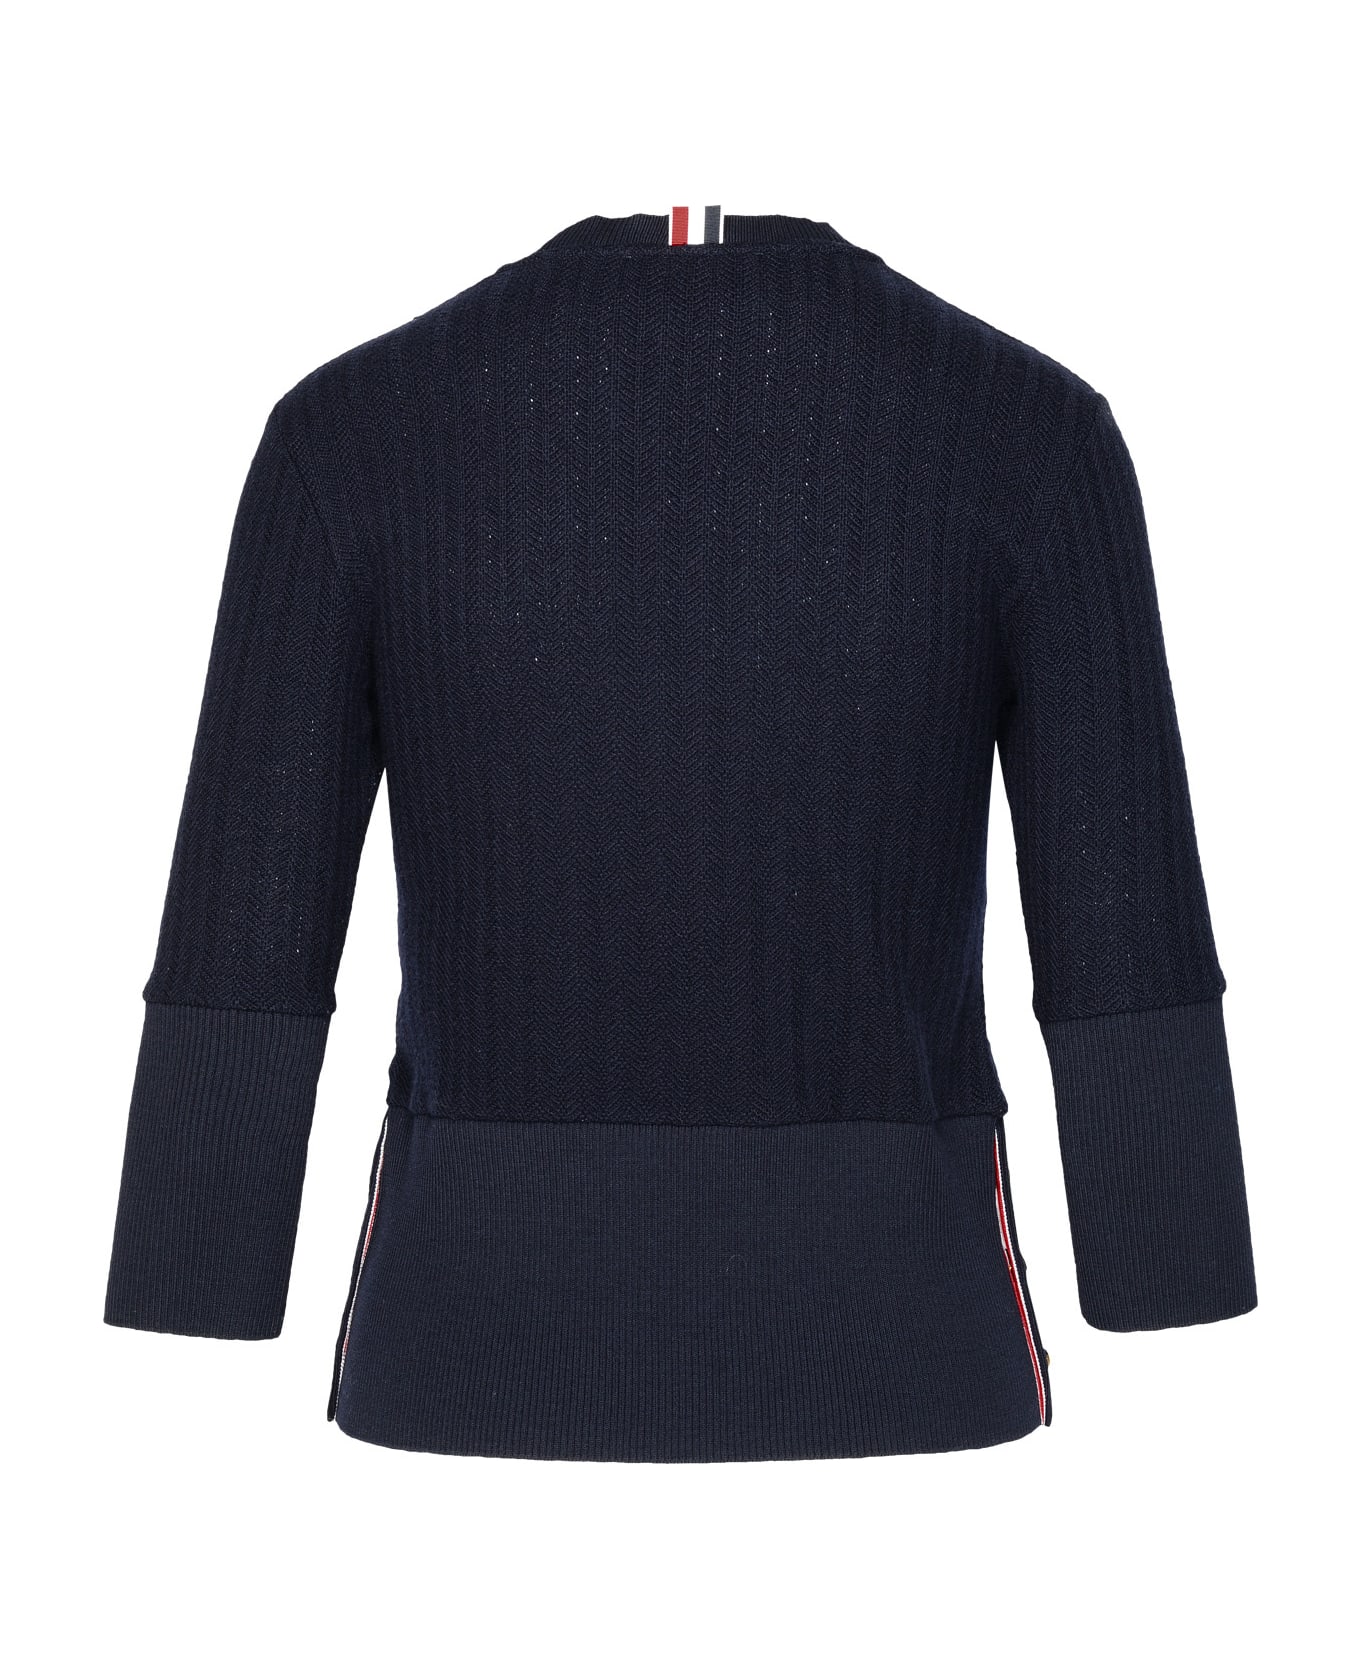 Thom Browne Navy Virgin Wool Sweater - Navy